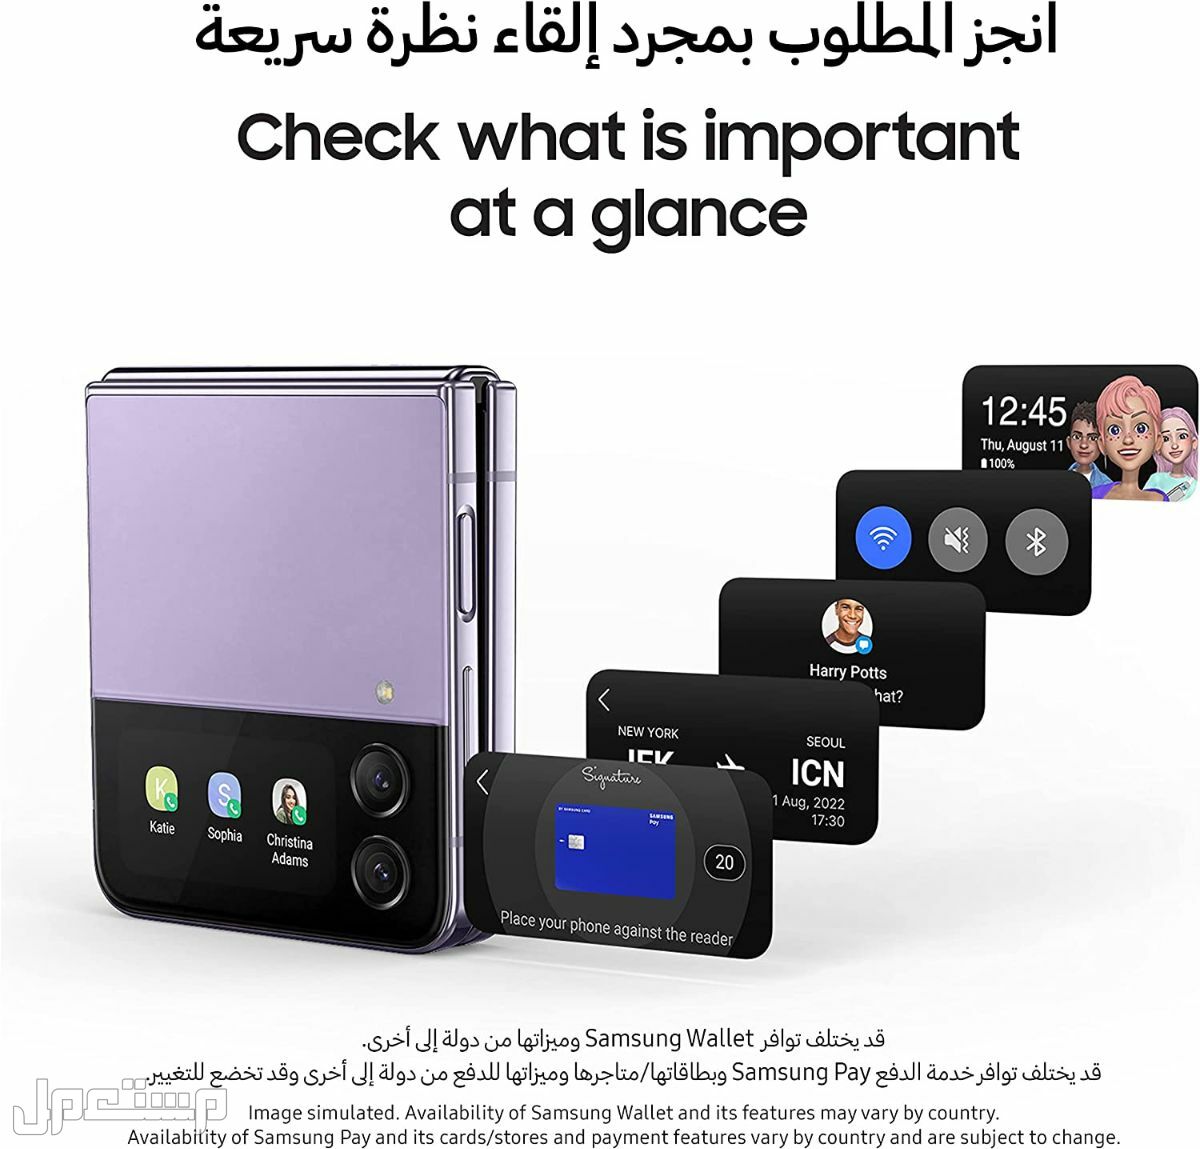 جوال جلاكسي: تعرف على مواصفات وأسعار وأهم مميزات جوال جلاكسي في عمان هاتف جلاكسي